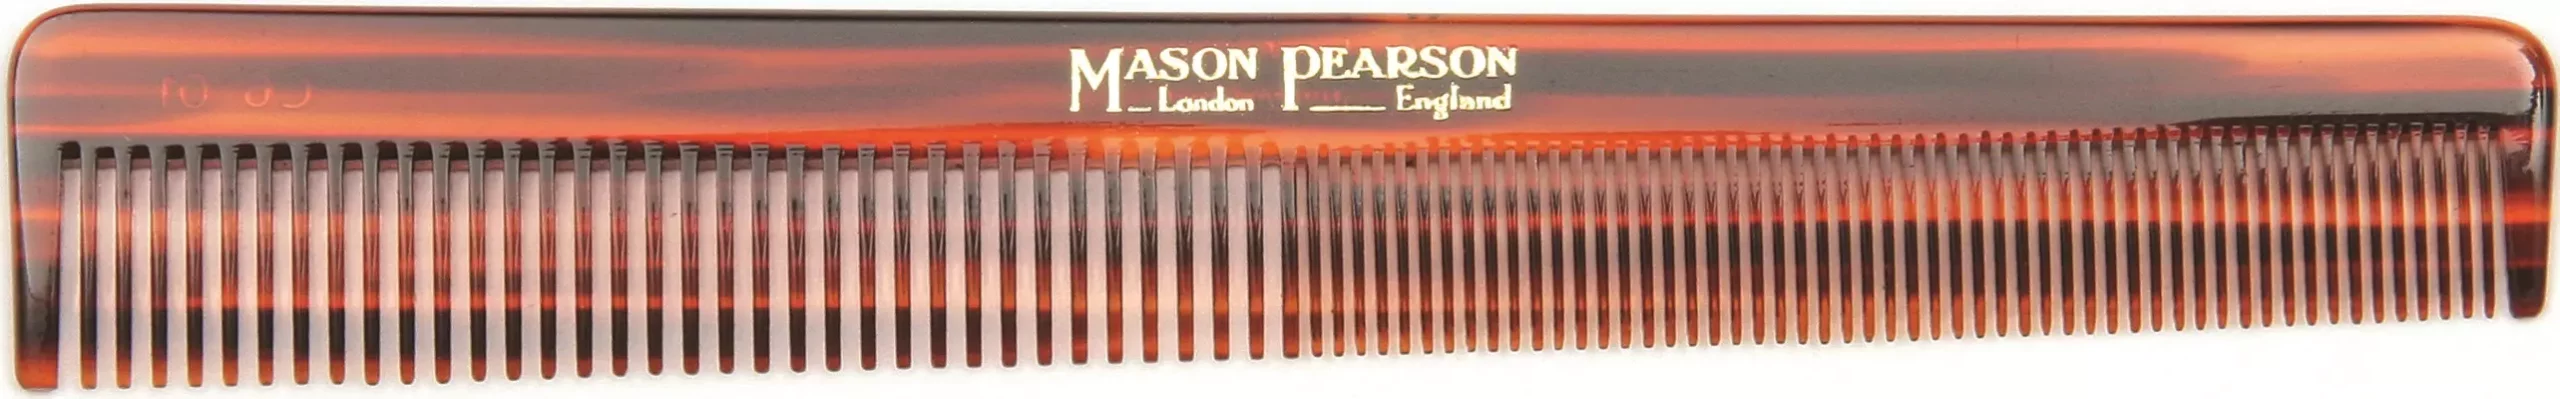 Mason Pearson C6 kam